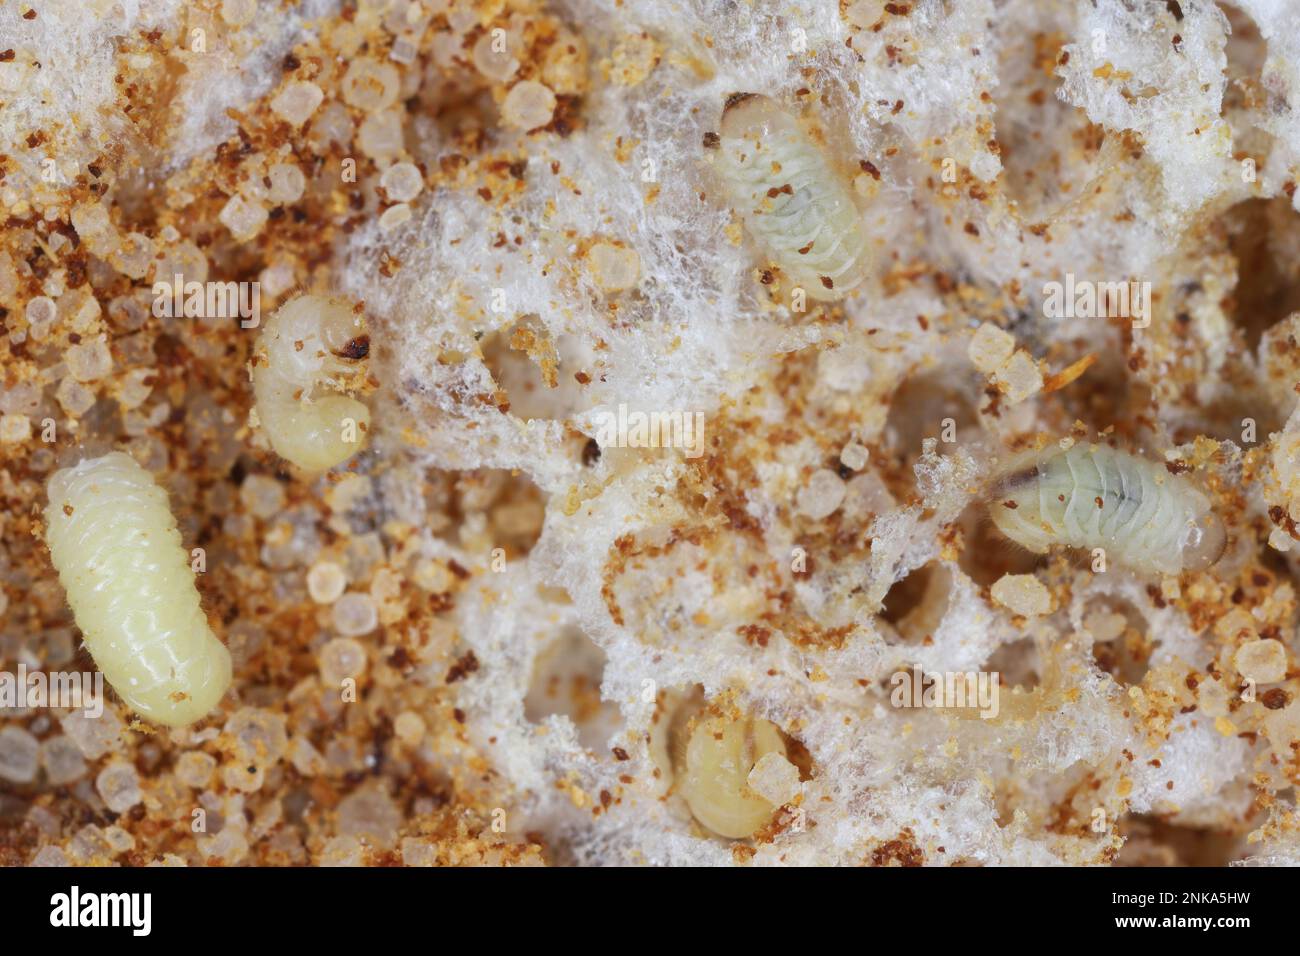 Biscuit, drugstore or bread beetle (Stegobium paniceum) larvae stored product pest on cookie debris. Stock Photo